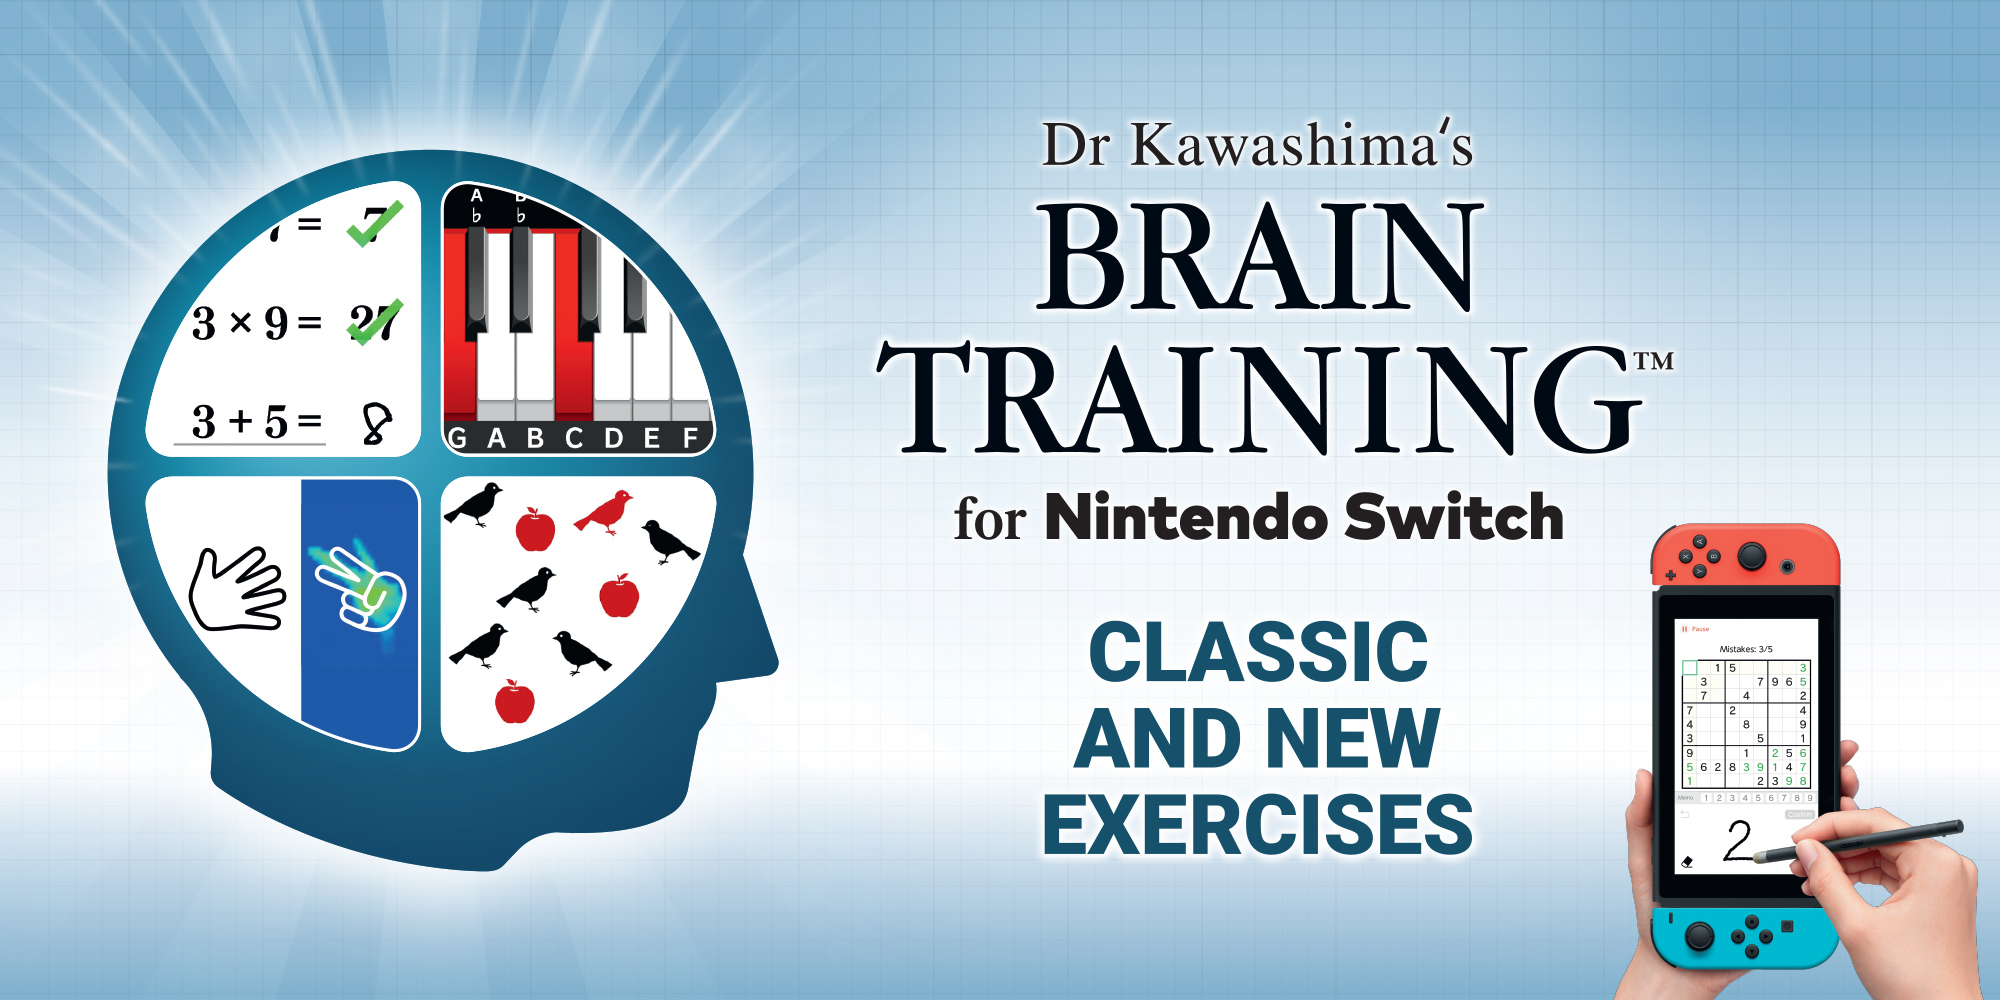 Dr Kawashima's Brain Training for 